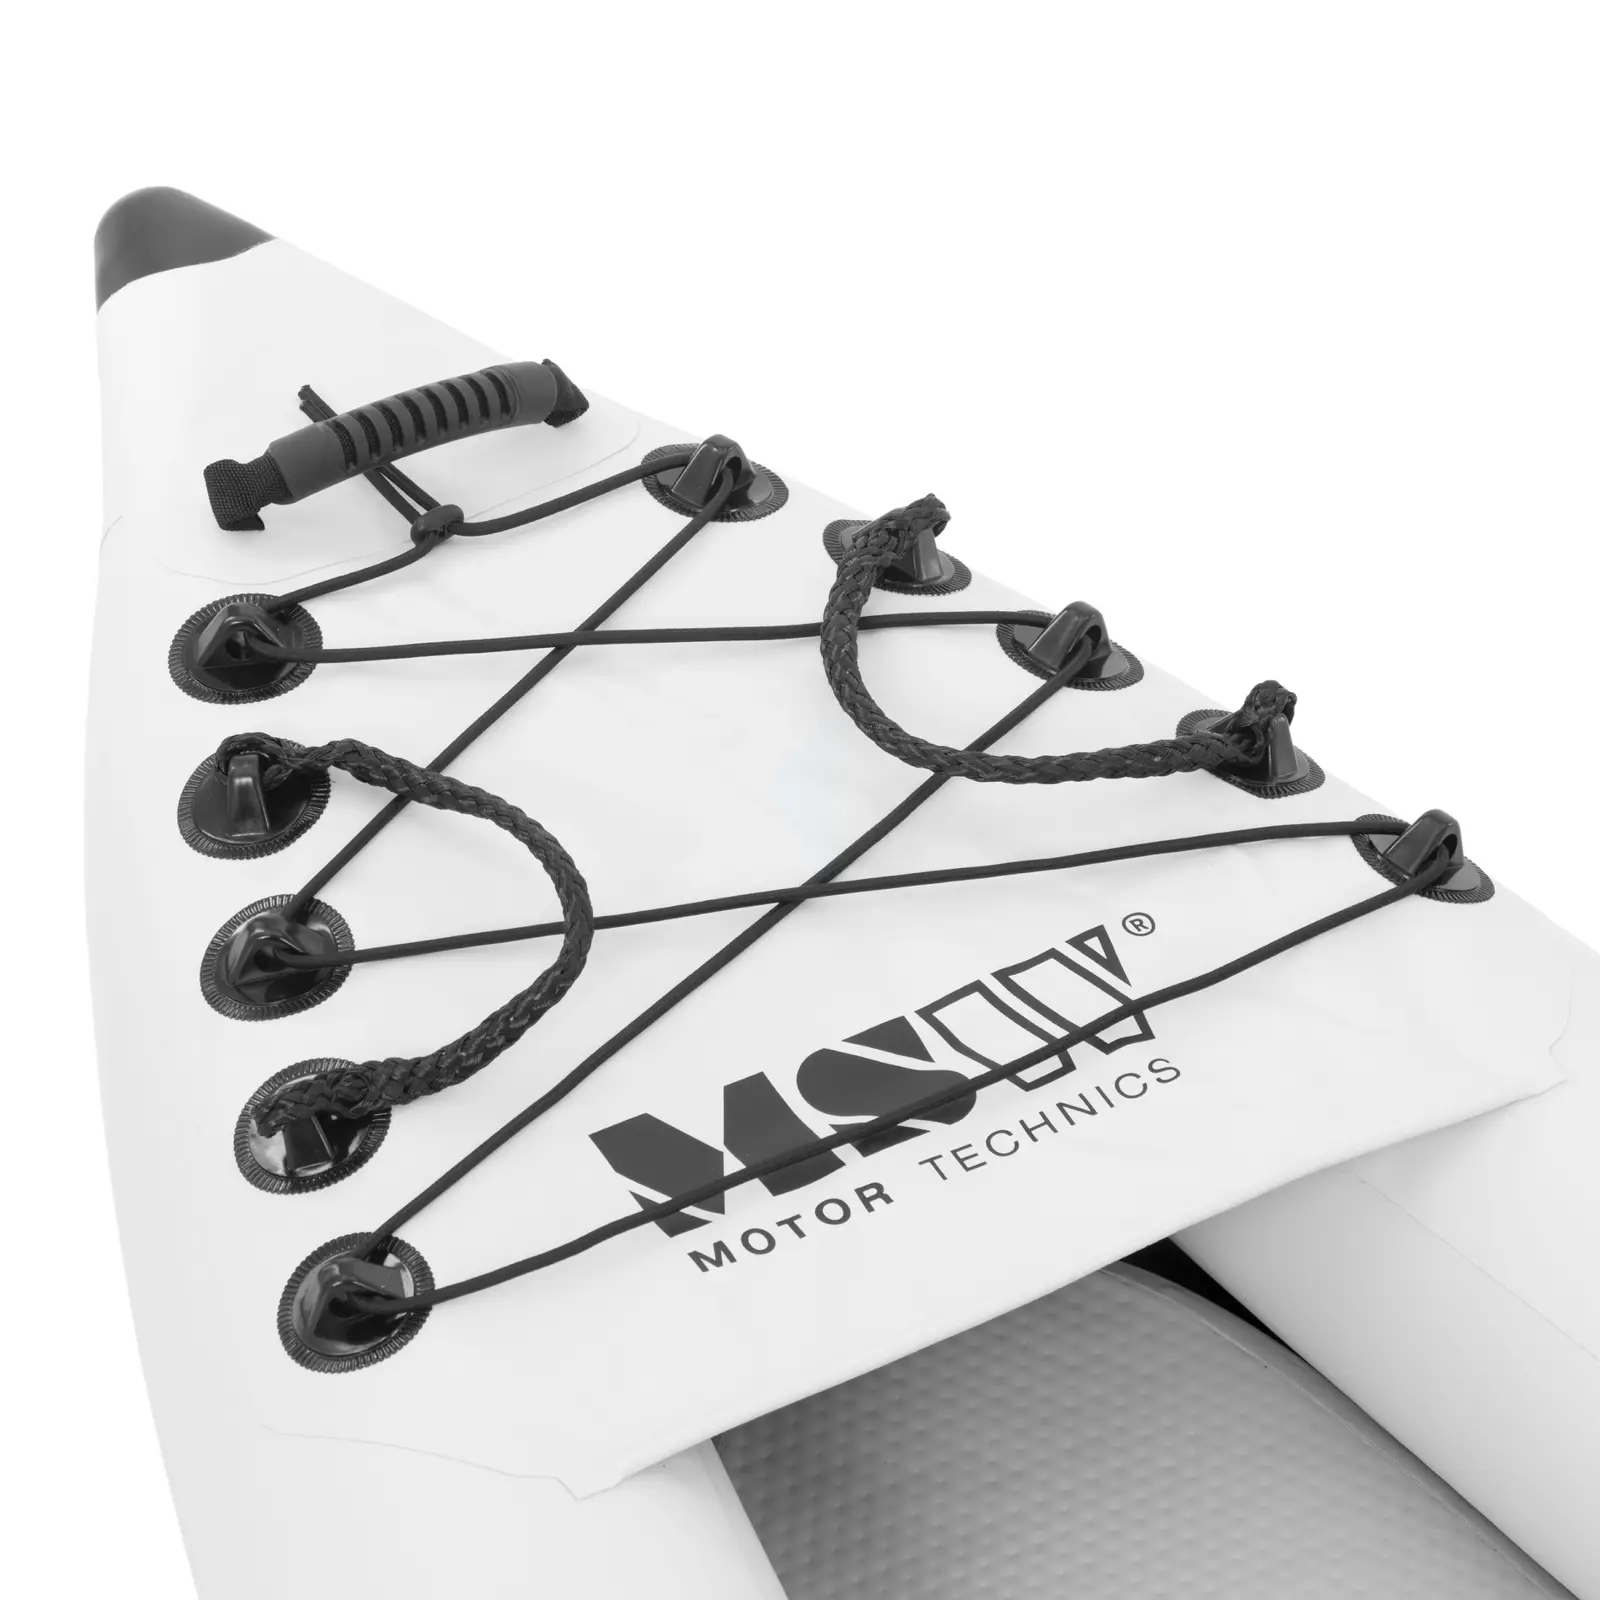 Kajak aufblasbar - Zweisitzer - Komplettset mit Paddel, Sitz und Zubehör